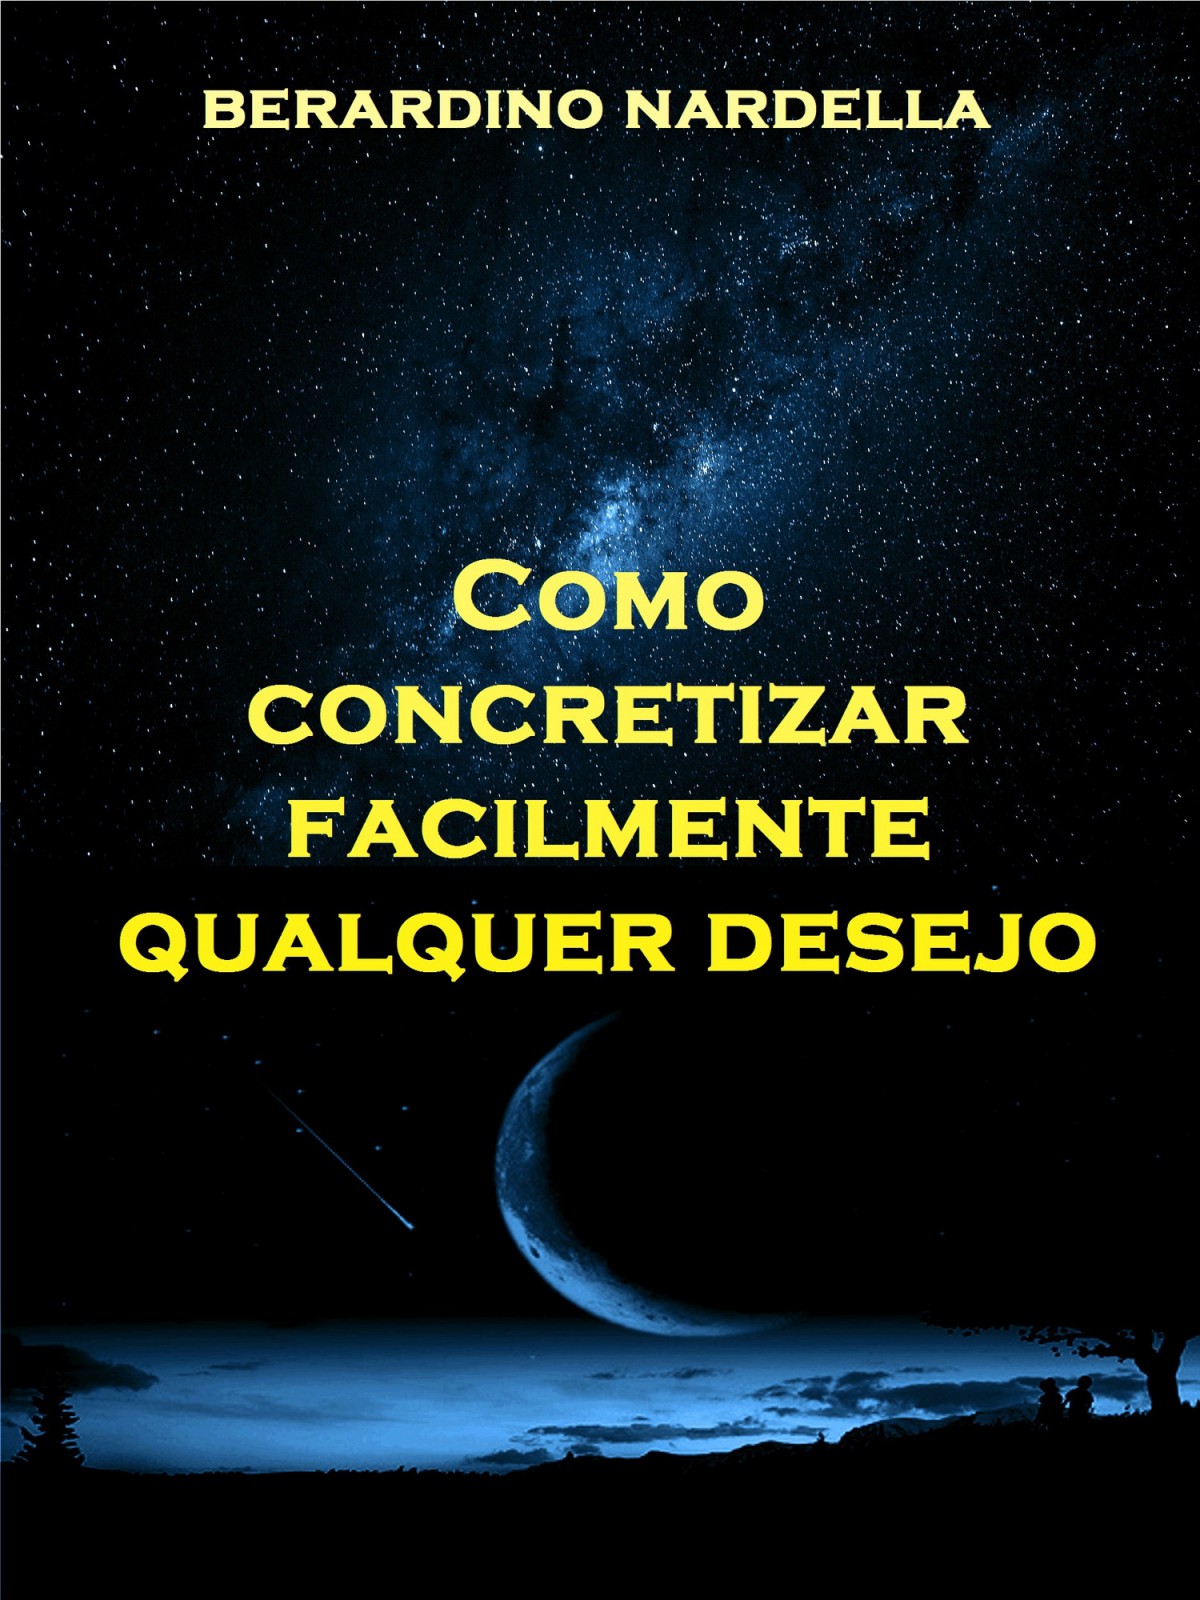 Книга Como Concretizar Facilmente Qualquer Desejo из серии , созданная Peruto Daniela, Berardino Nardella, может относится к жанру Личностный рост. Стоимость электронной книги Como Concretizar Facilmente Qualquer Desejo с идентификатором 40209655 составляет 272.27 руб.